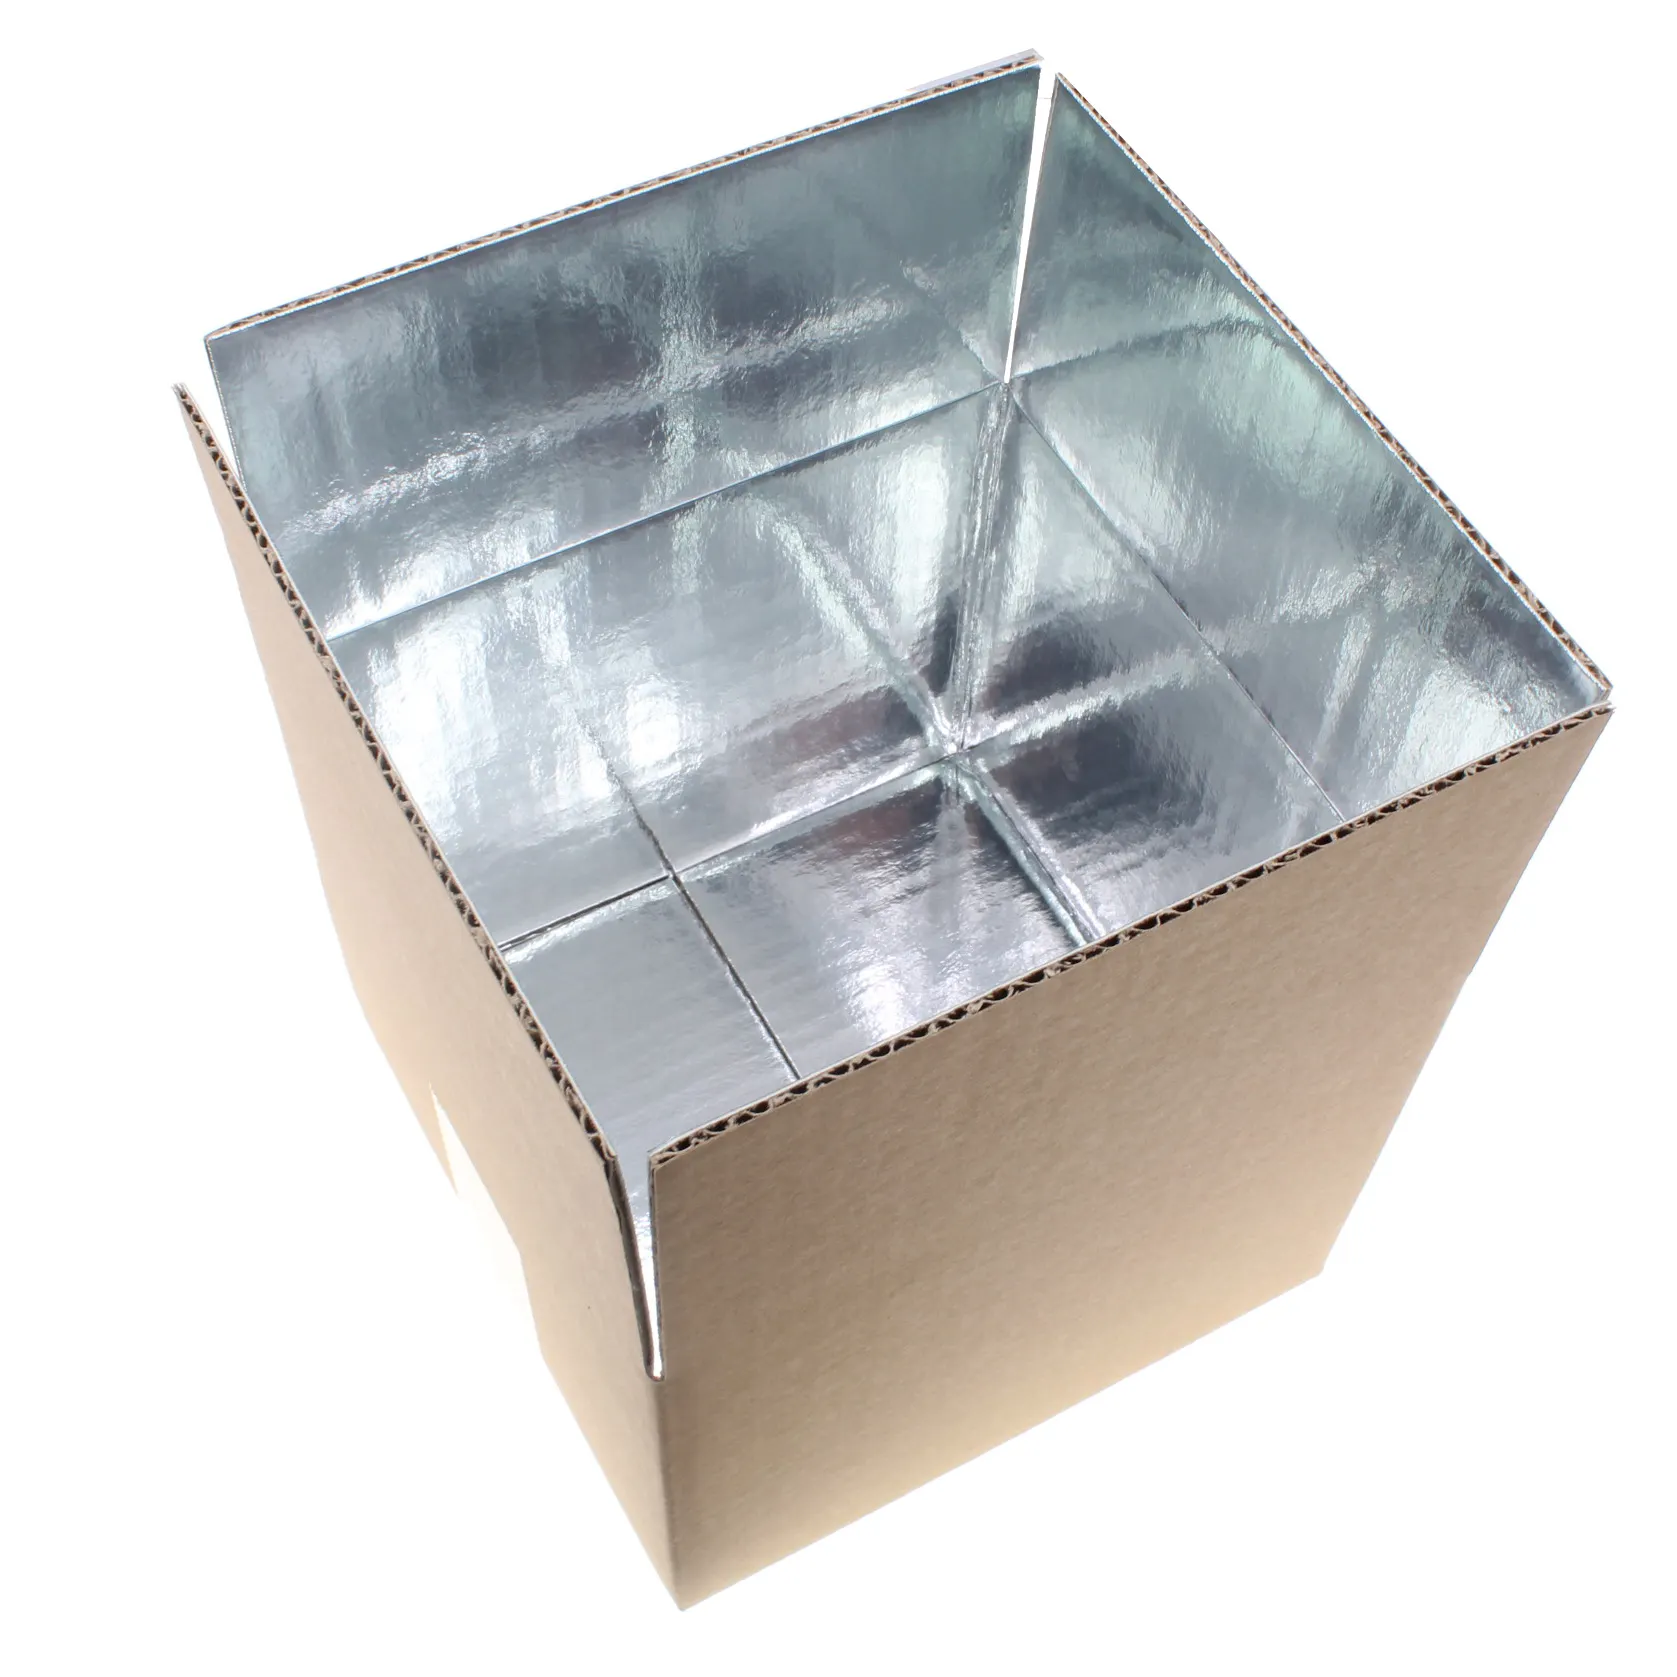 Гофрированная коробка для замороженных продуктов от производителя, индивидуальный дизайн, 5 кг и 10 кг, водонепроницаемая упаковочная коробка для замороженного мяса или морепродуктов